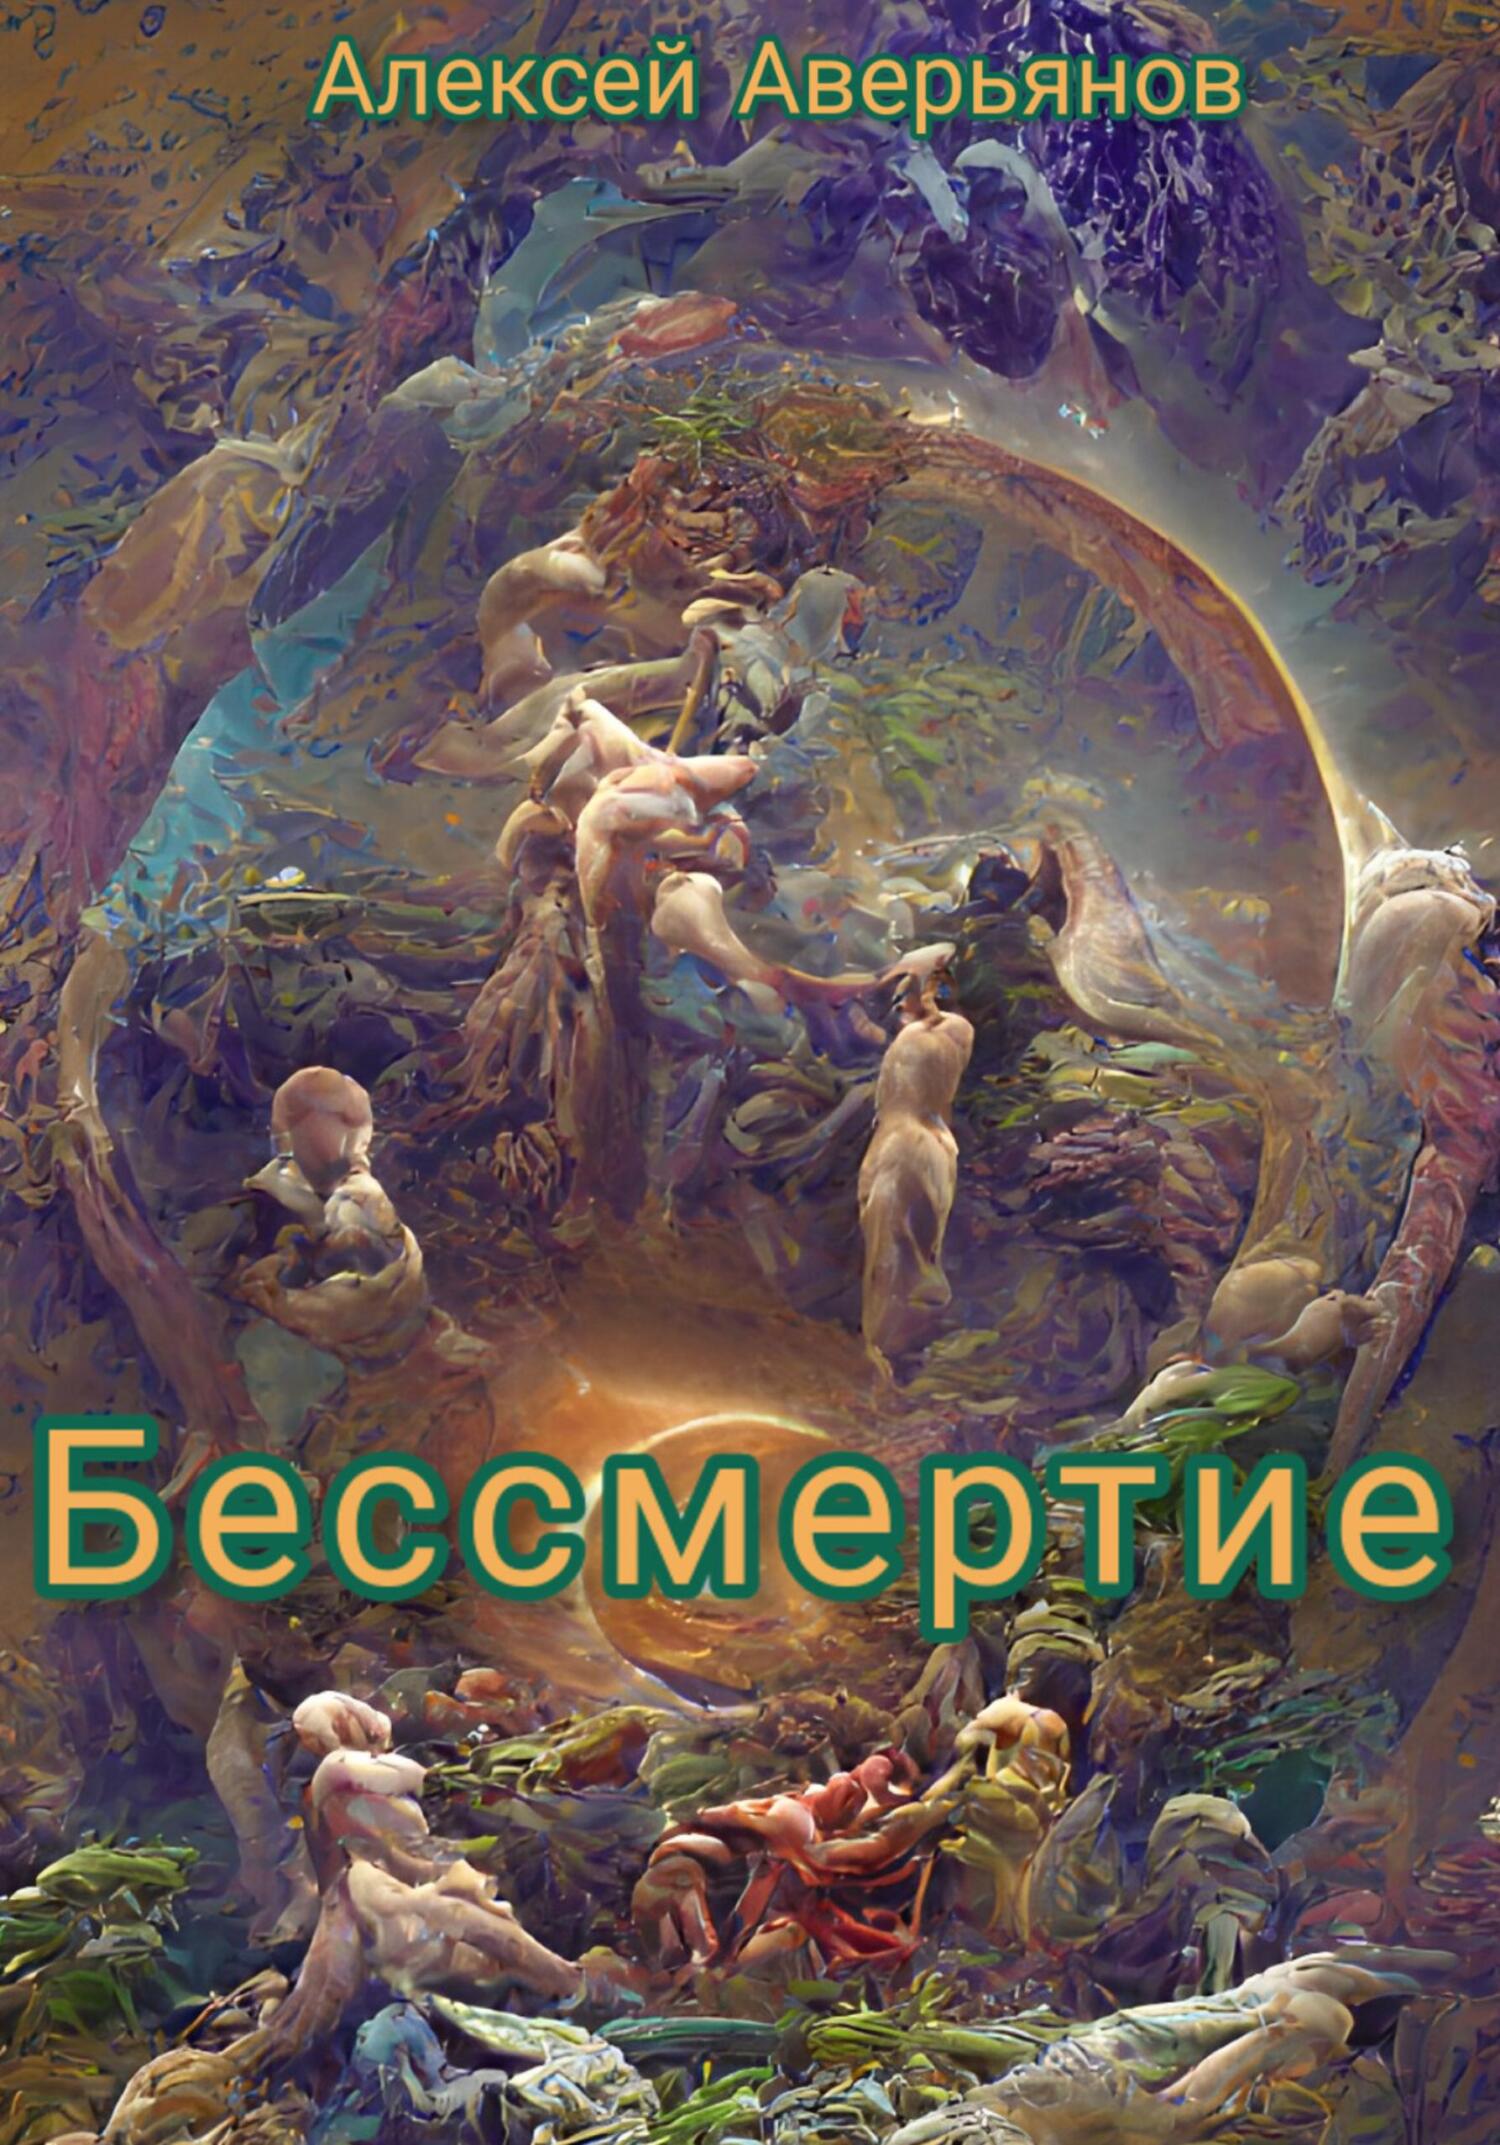 Бессмертие - Алексей Аверьянов